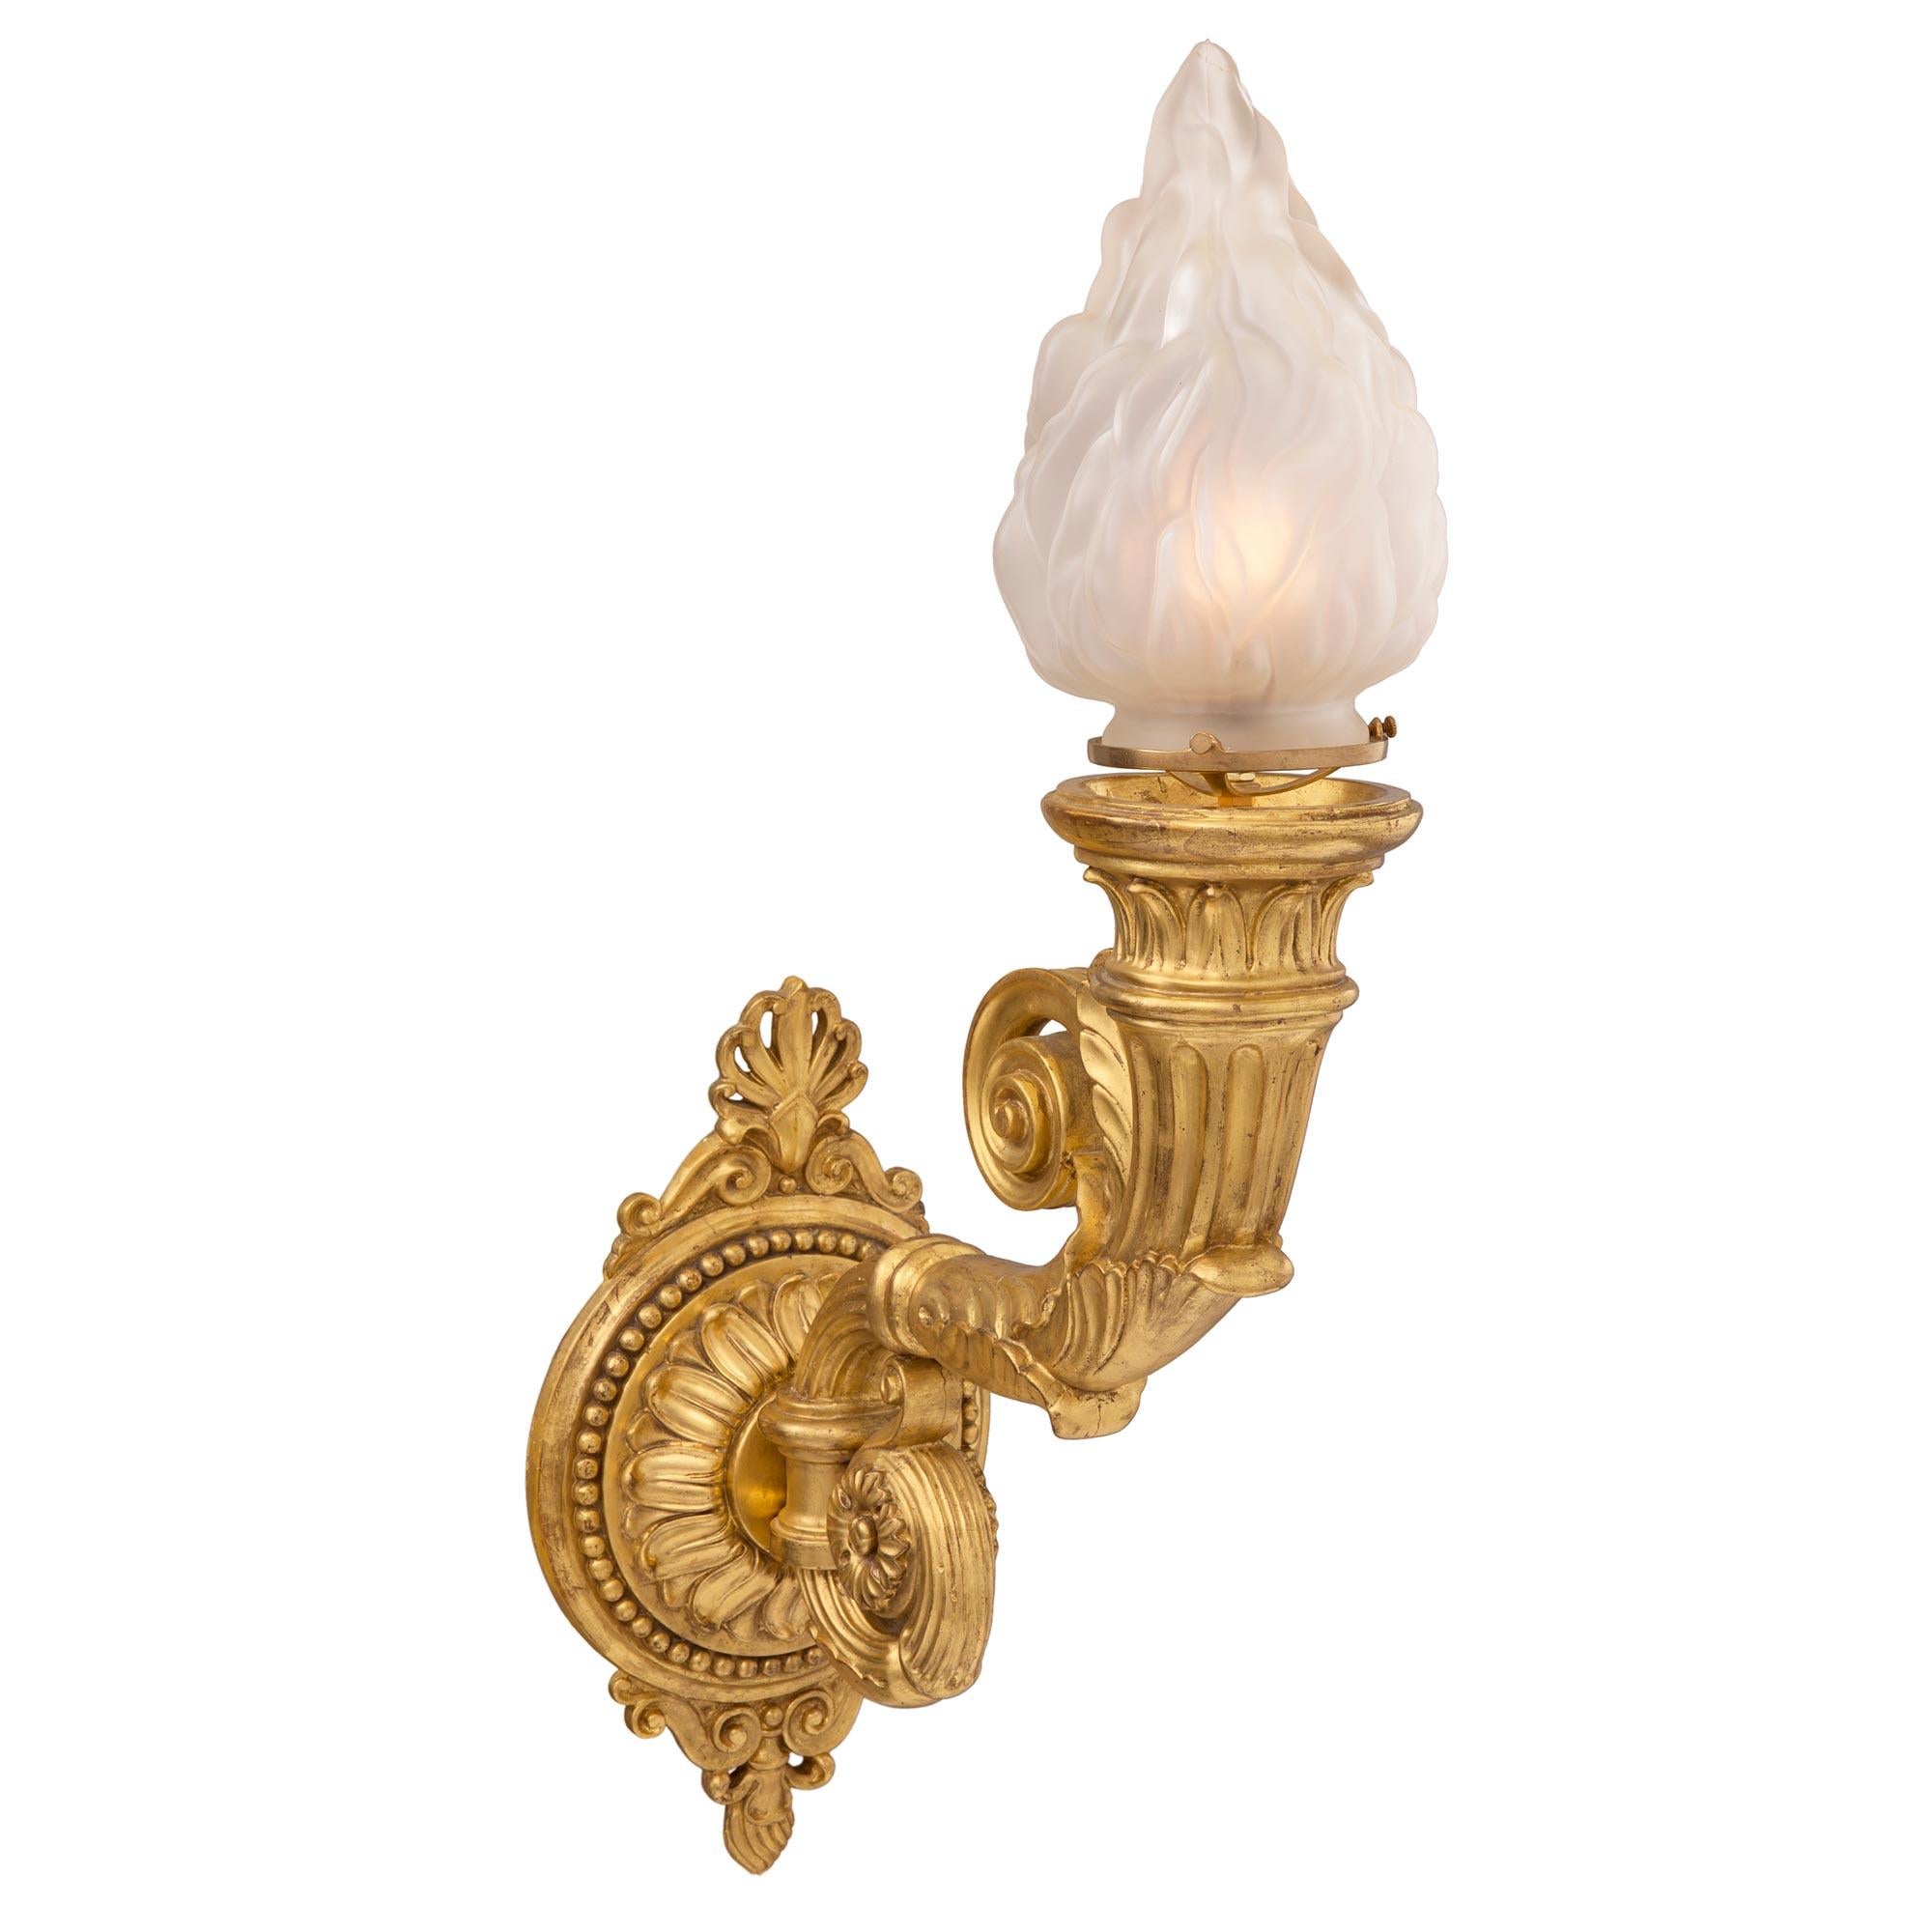 Une paire exquise et de grande taille d'appliques néo-classiques italiennes du 19ème siècle en bois doré et verre dépoli Bras de Lumière. Chaque applique présente une plaque arrière circulaire des plus décoratives avec une élégante bande perlée, des